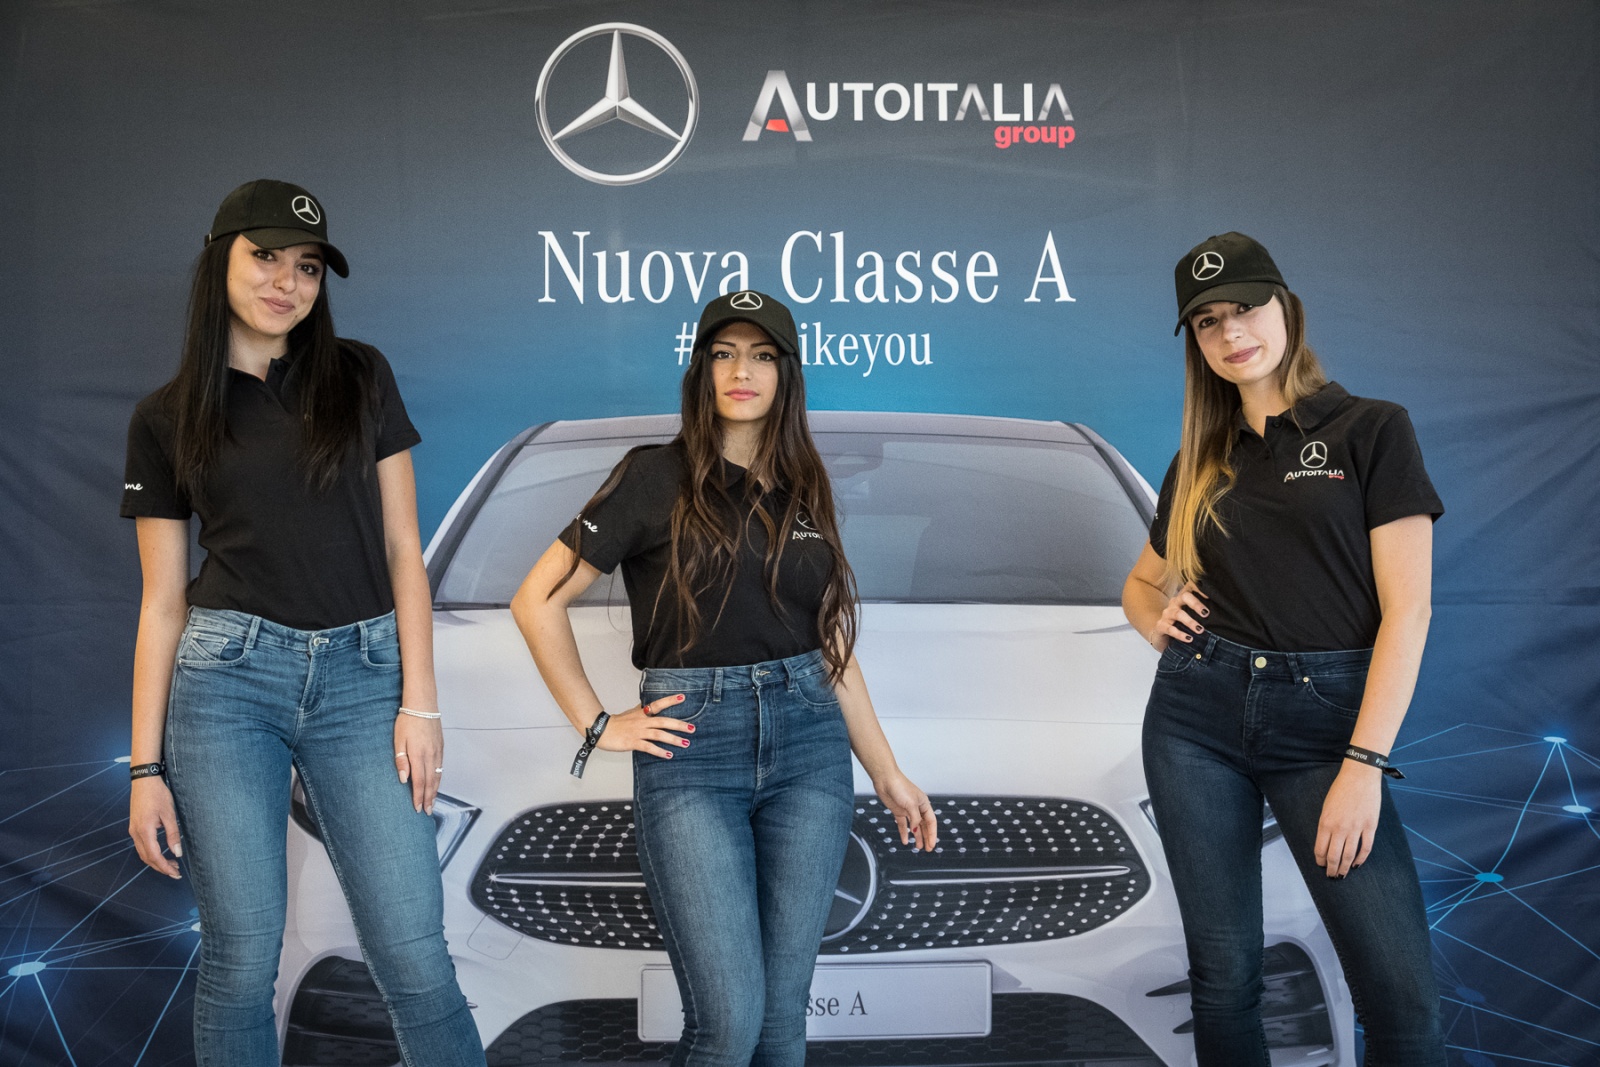 Auto Italia Group - Concessionaria Ufficiale Mercedes-Benz e Smart "evento nuova Classe A"